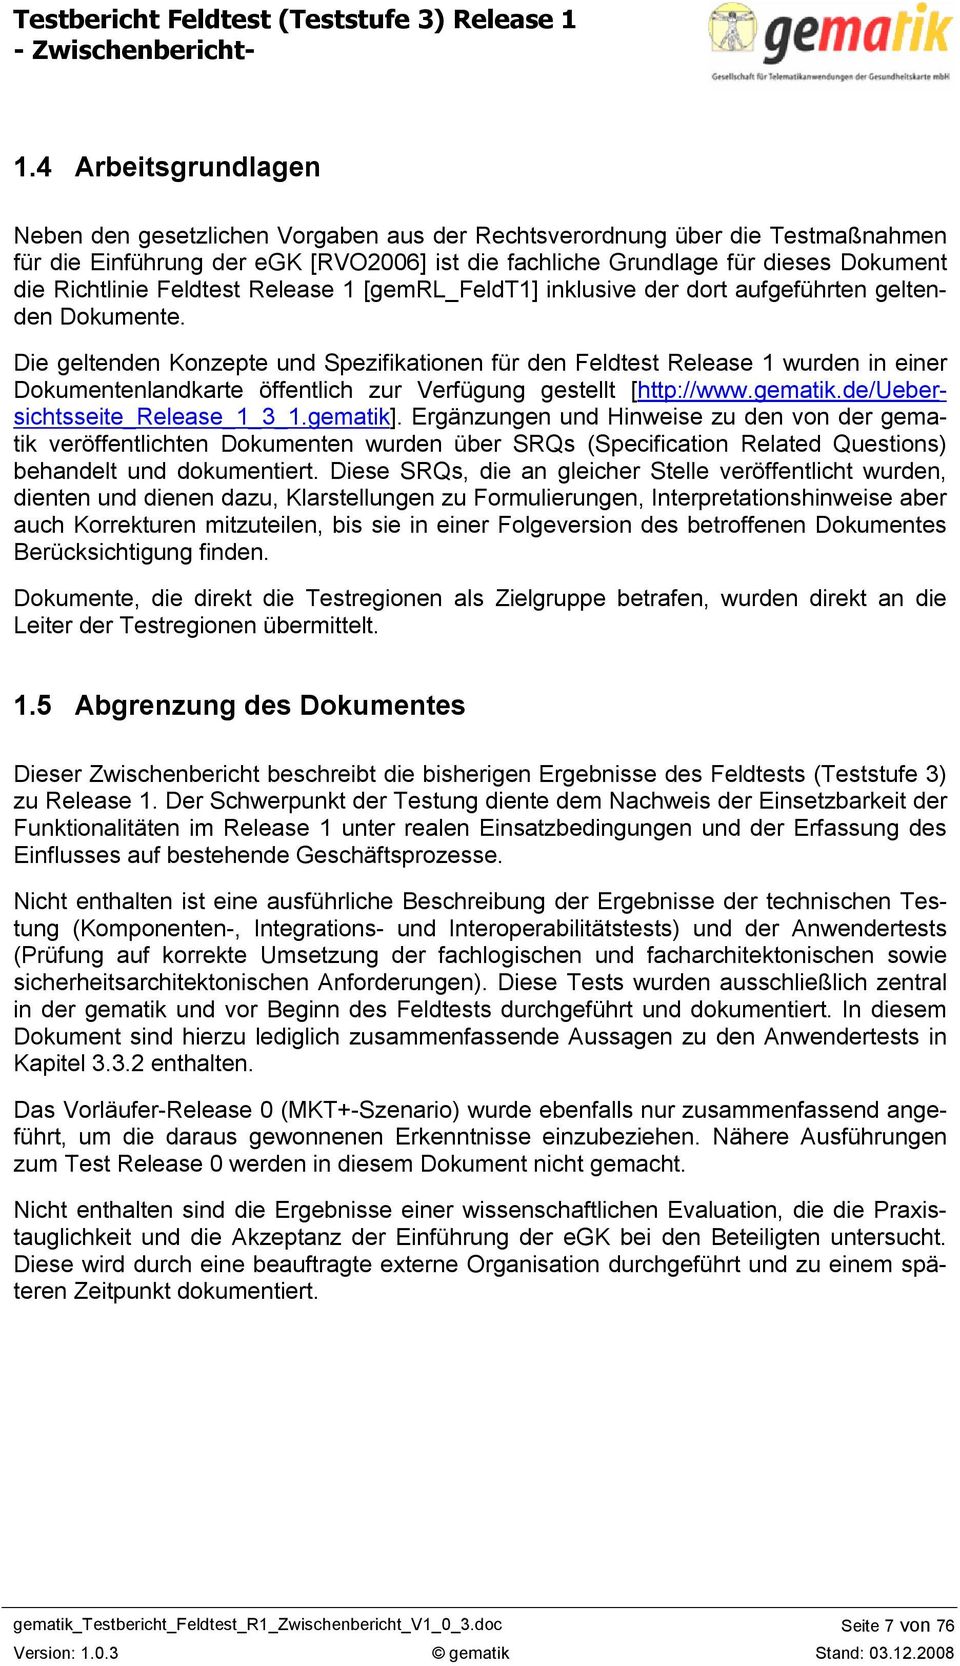 Die geltenden Konzepte und Spezifikationen für den Feldtest Release 1 wurden in einer Dokumentenlandkarte öffentlich zur Verfügung gestellt [http://www.gematik.de/uebersichtsseite_release_1_3_1.